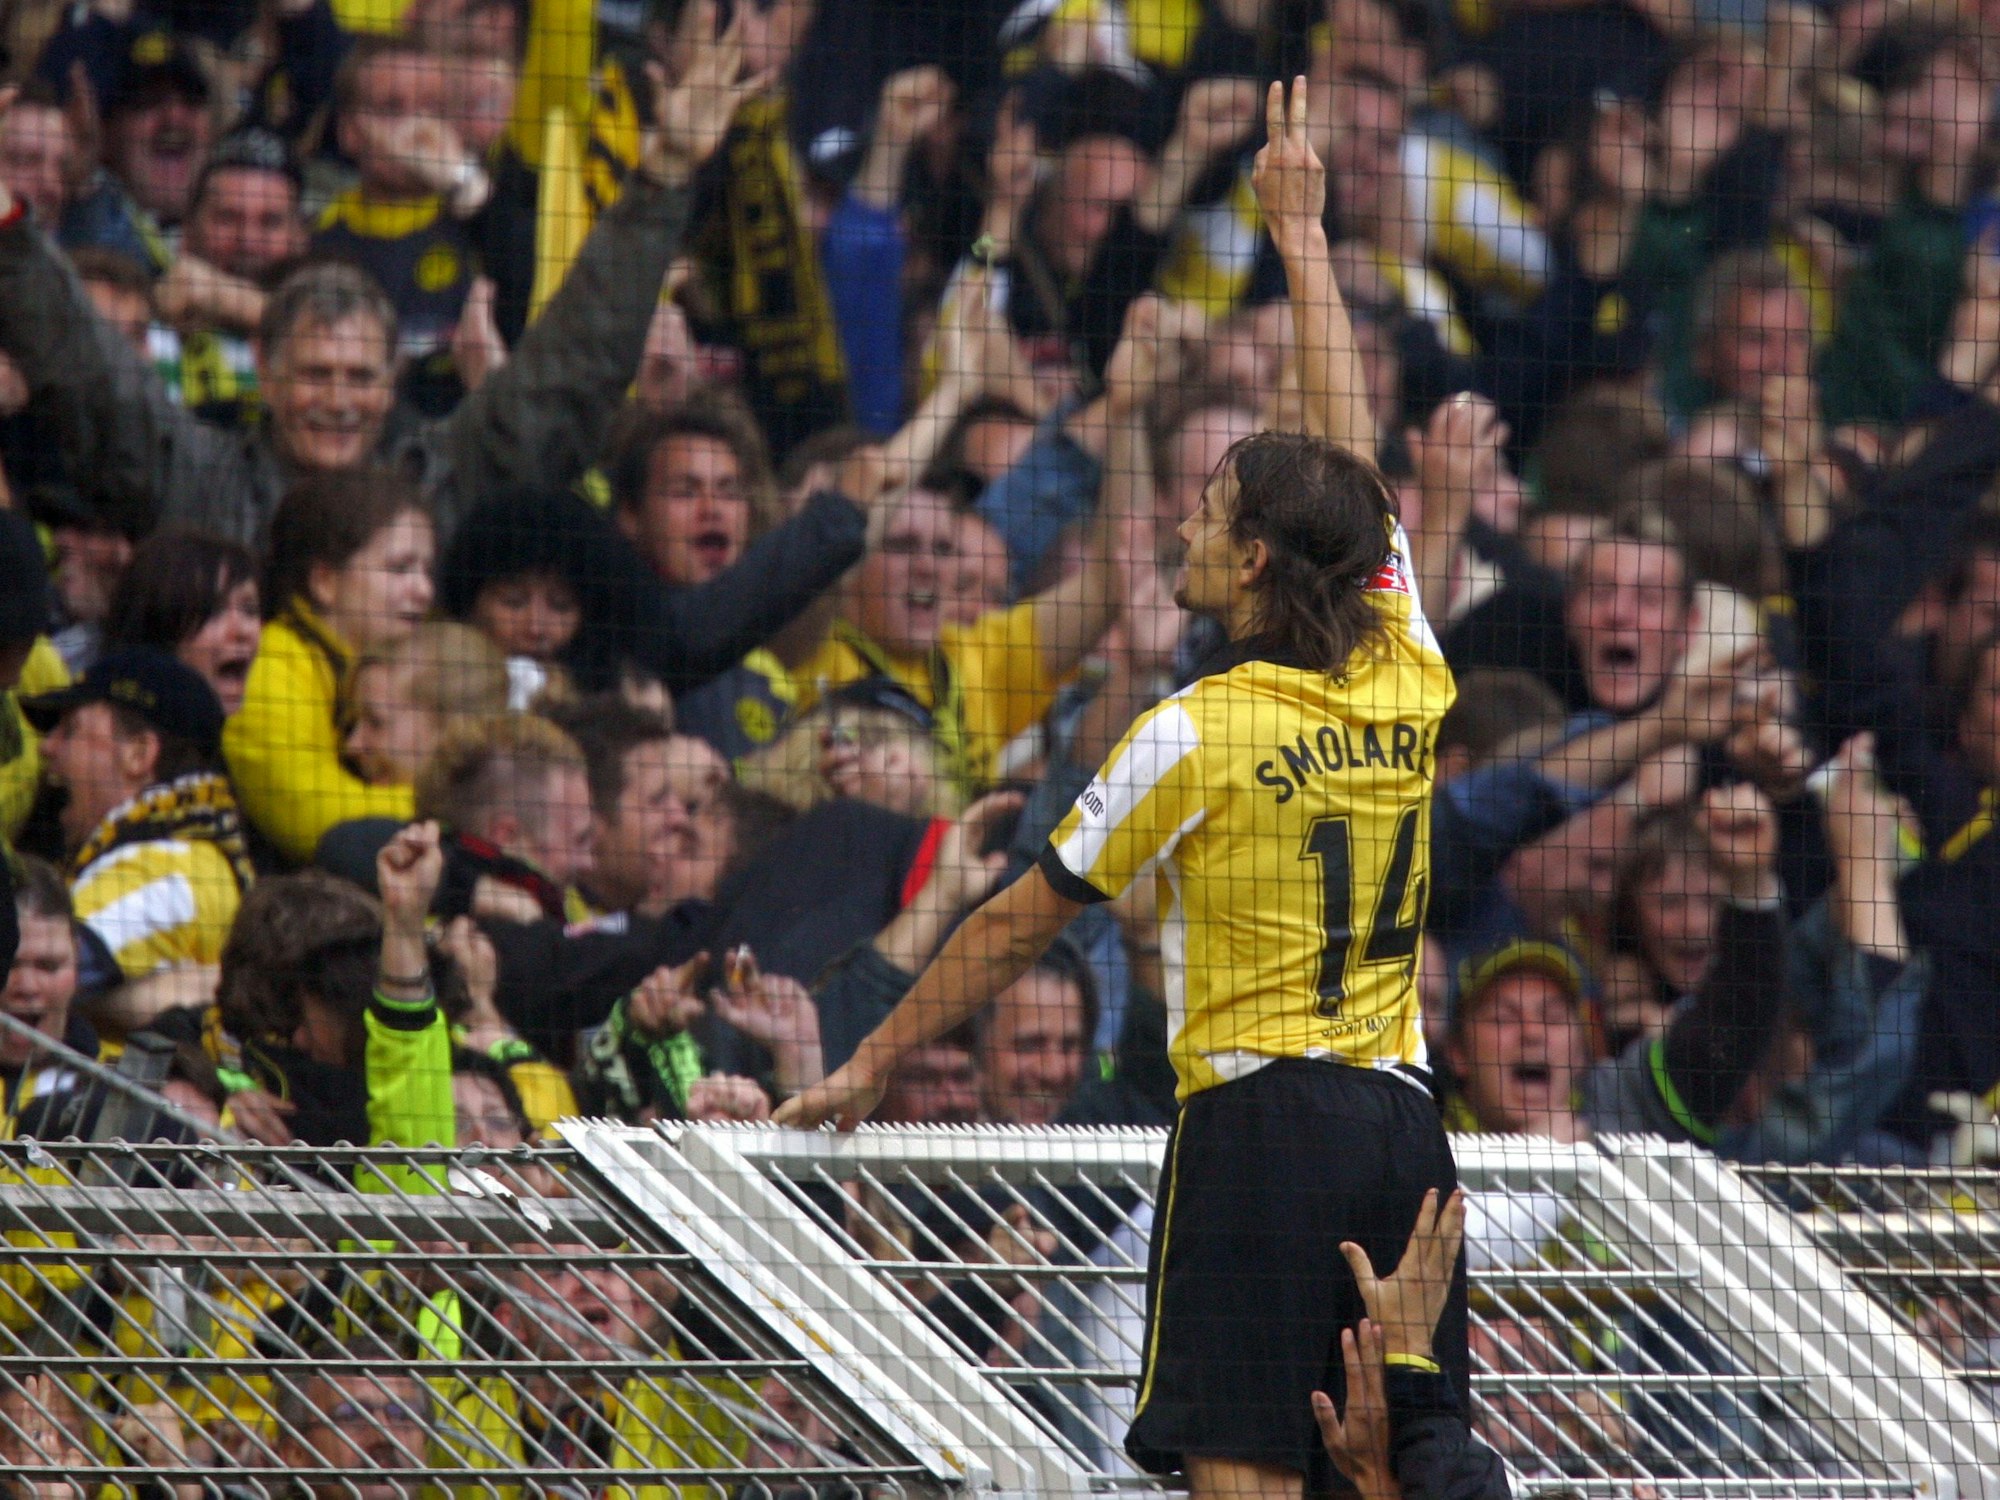 Dortmunds Torschütze Ebi Smolarek lässt sich nach seinem Treffer zum 2:0 gegen Schalke 04 feiern.